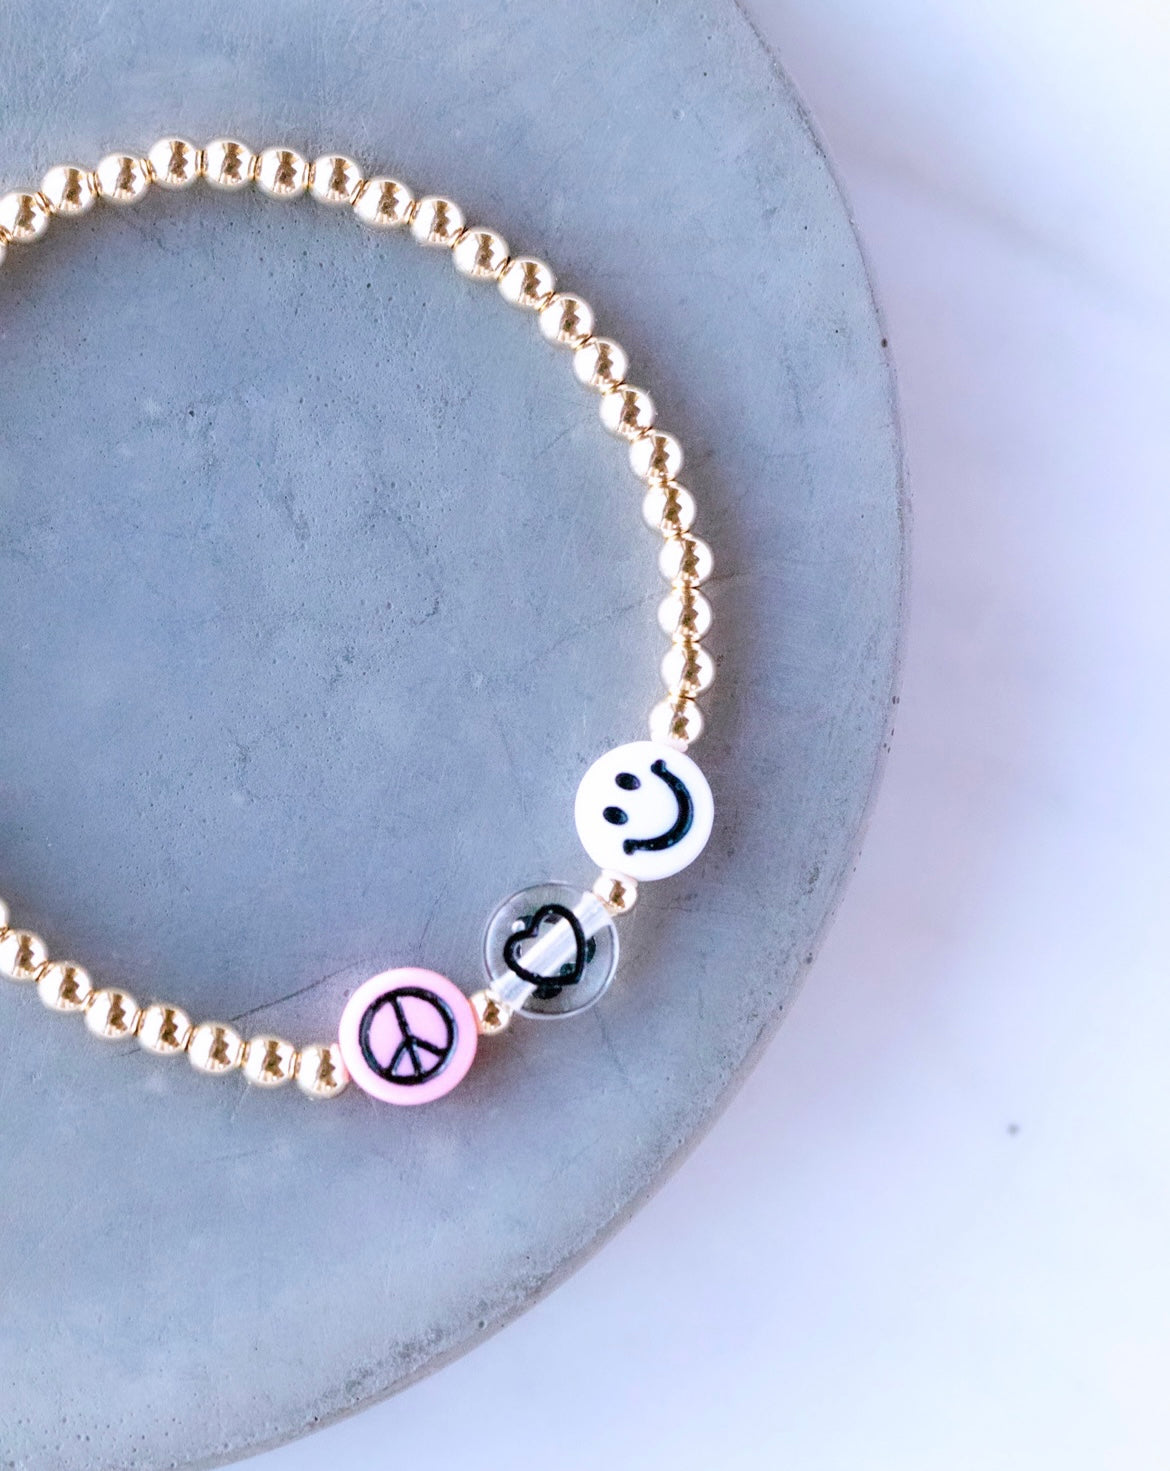 Jewelry :: peace love girl scouts wish bracelet girl scout friendship  bracelet gift card